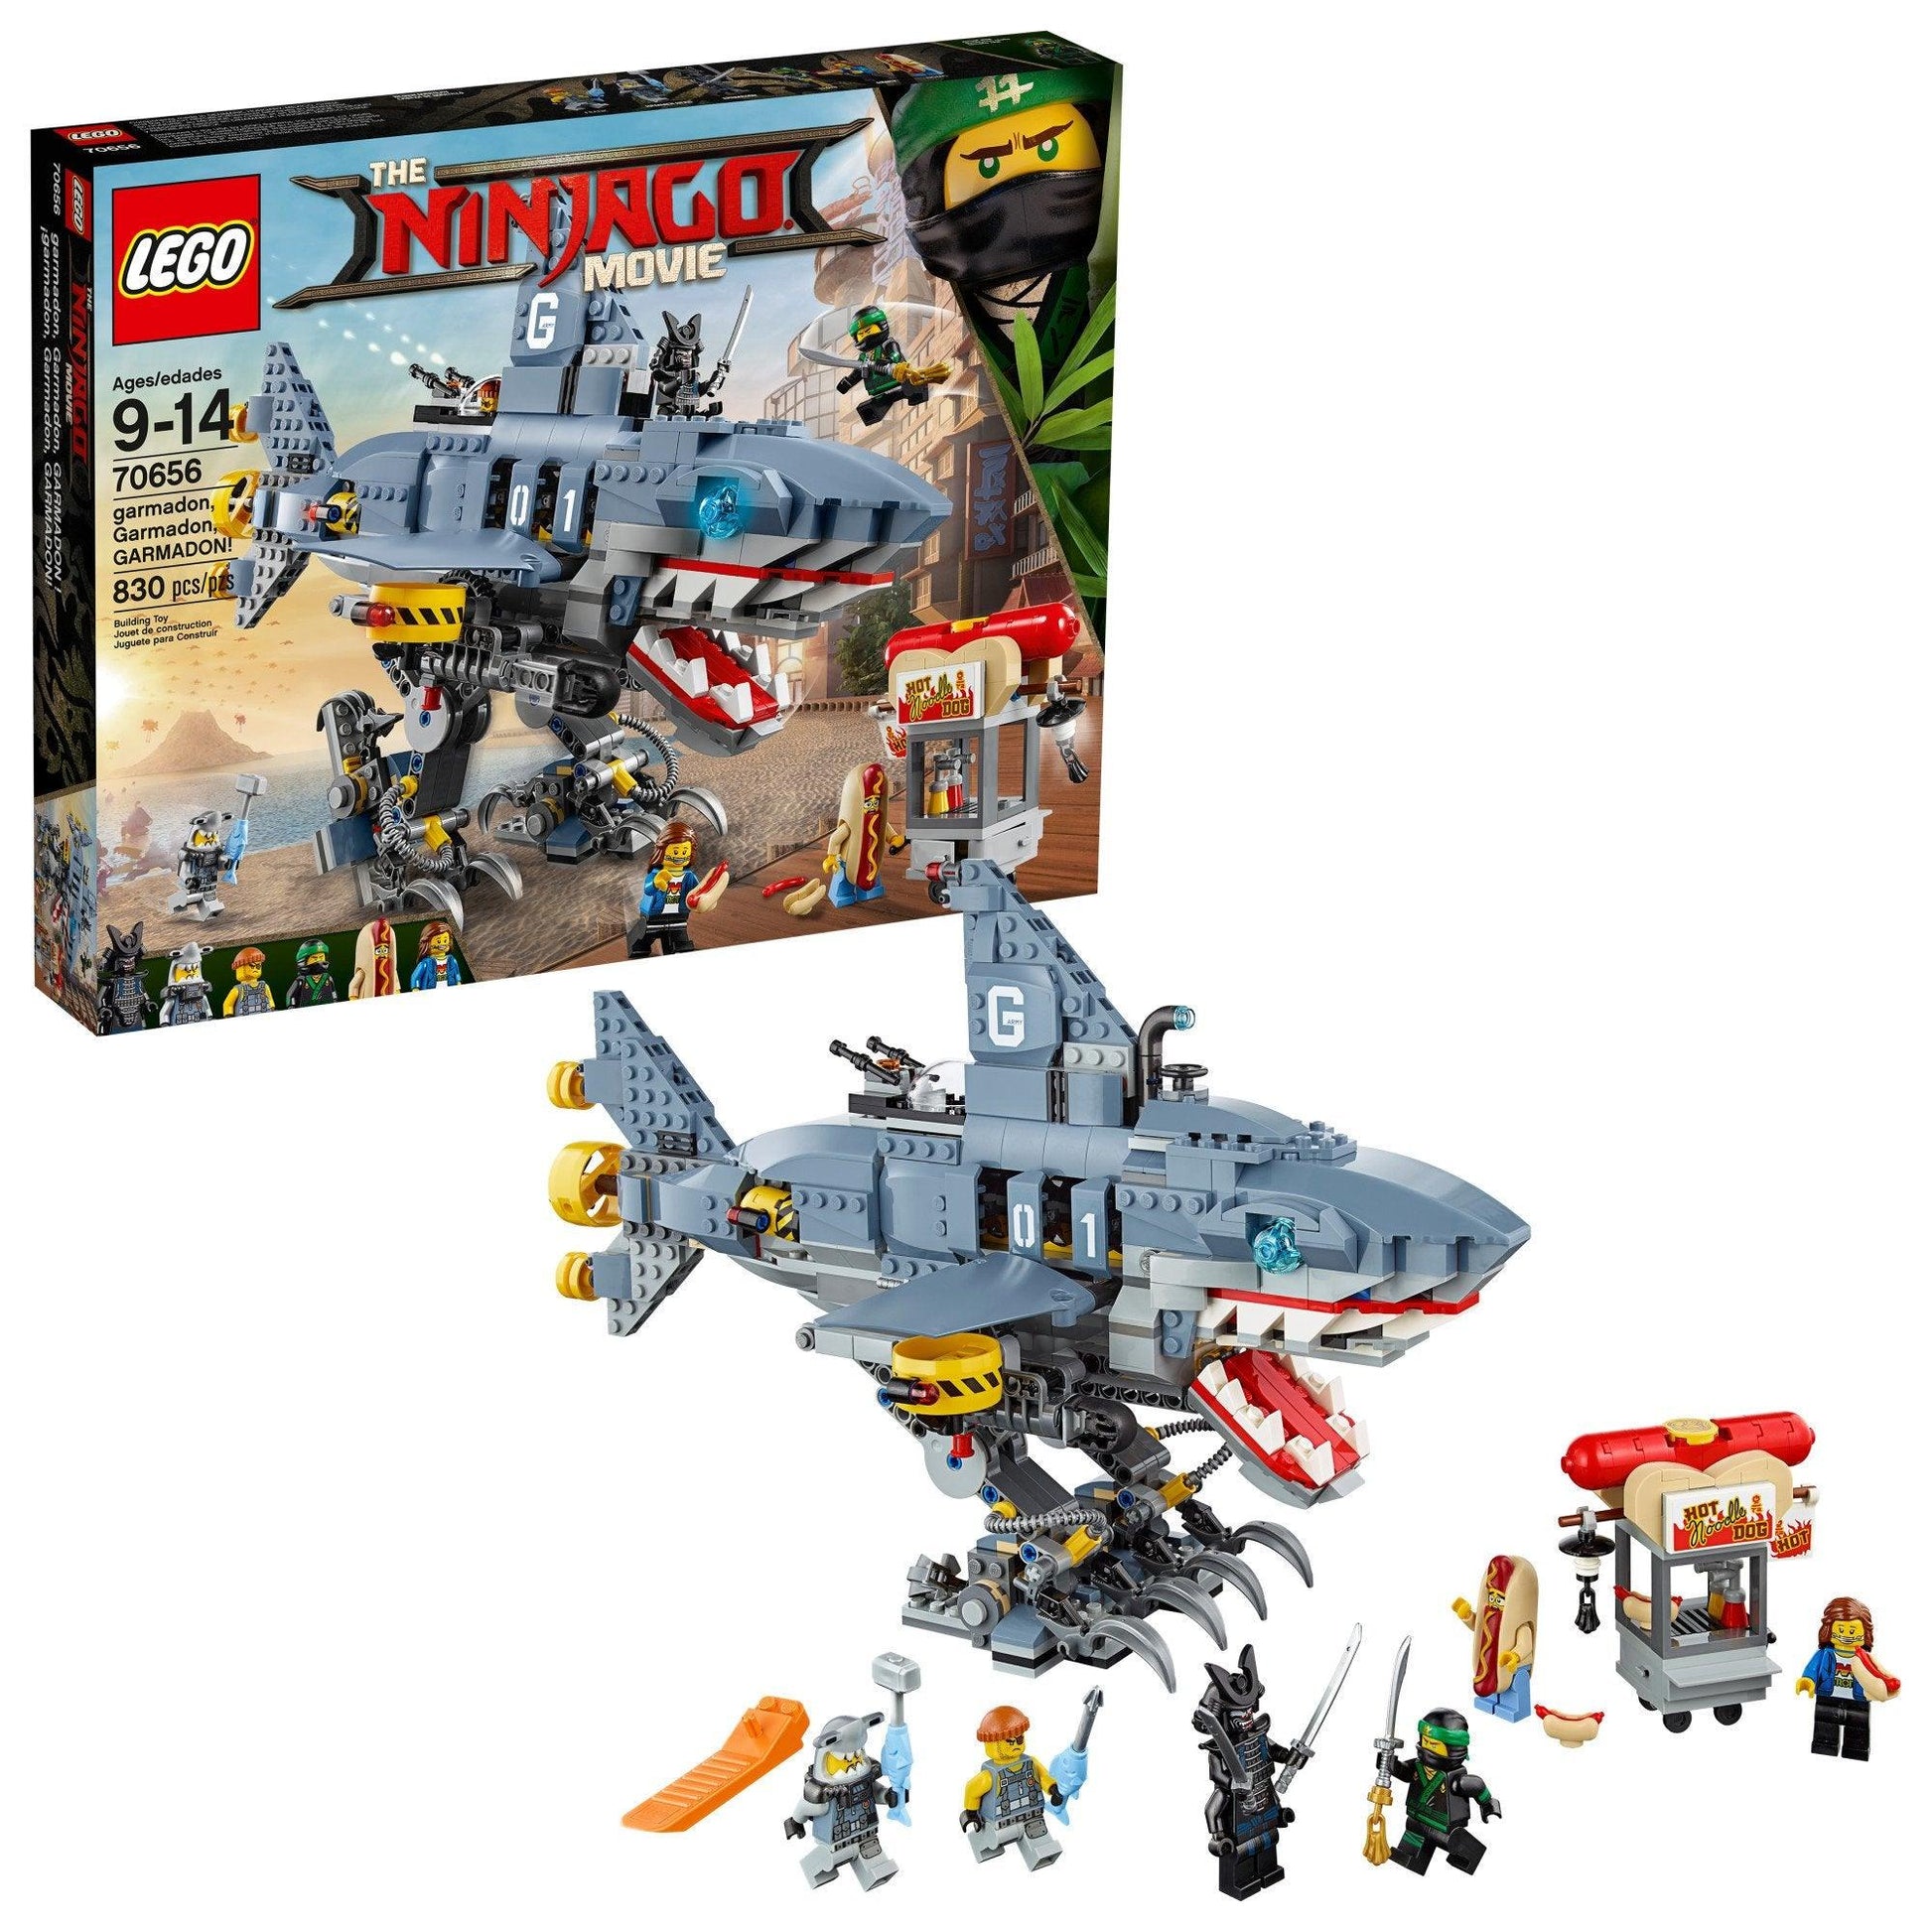 LEGO Mecha haai van Garmadon uit de LEGO Ninjago film 70656 Ninjago LEGO NINJAGO @ 2TTOYS LEGO €. 79.99